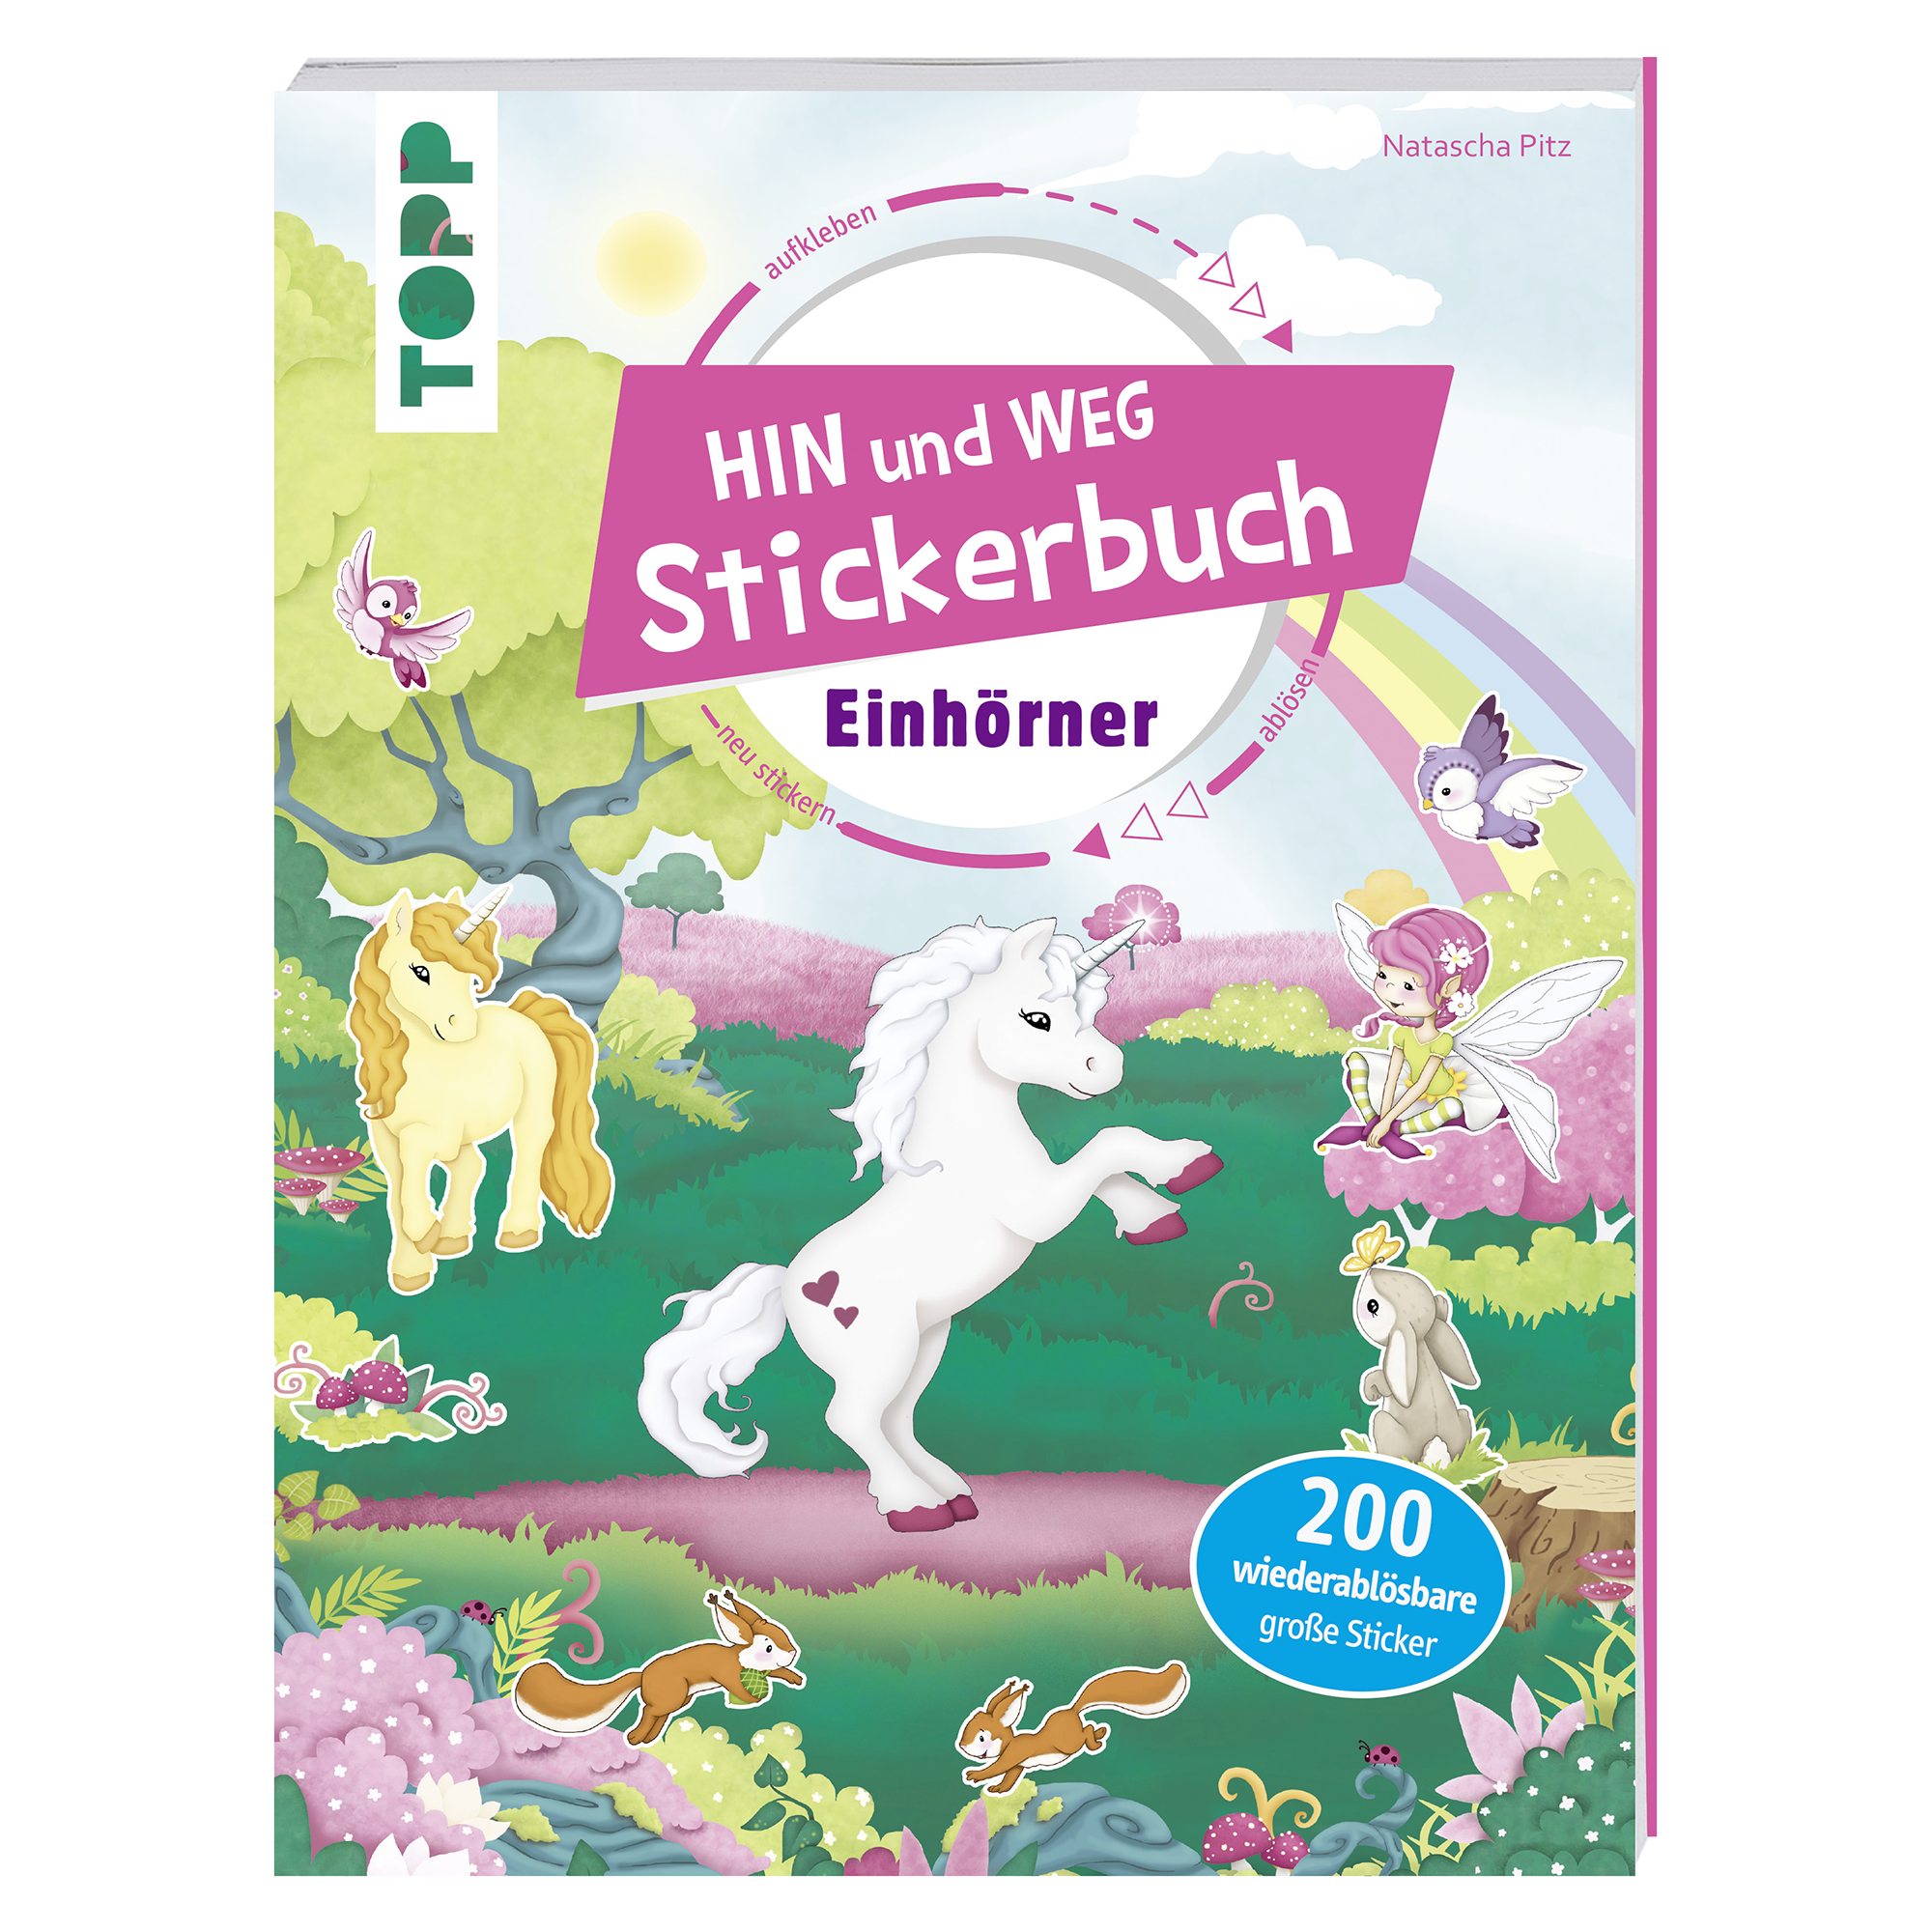 Das Hin und weg Stickerbuch - Einhörner frechverlag 2000584478002 1